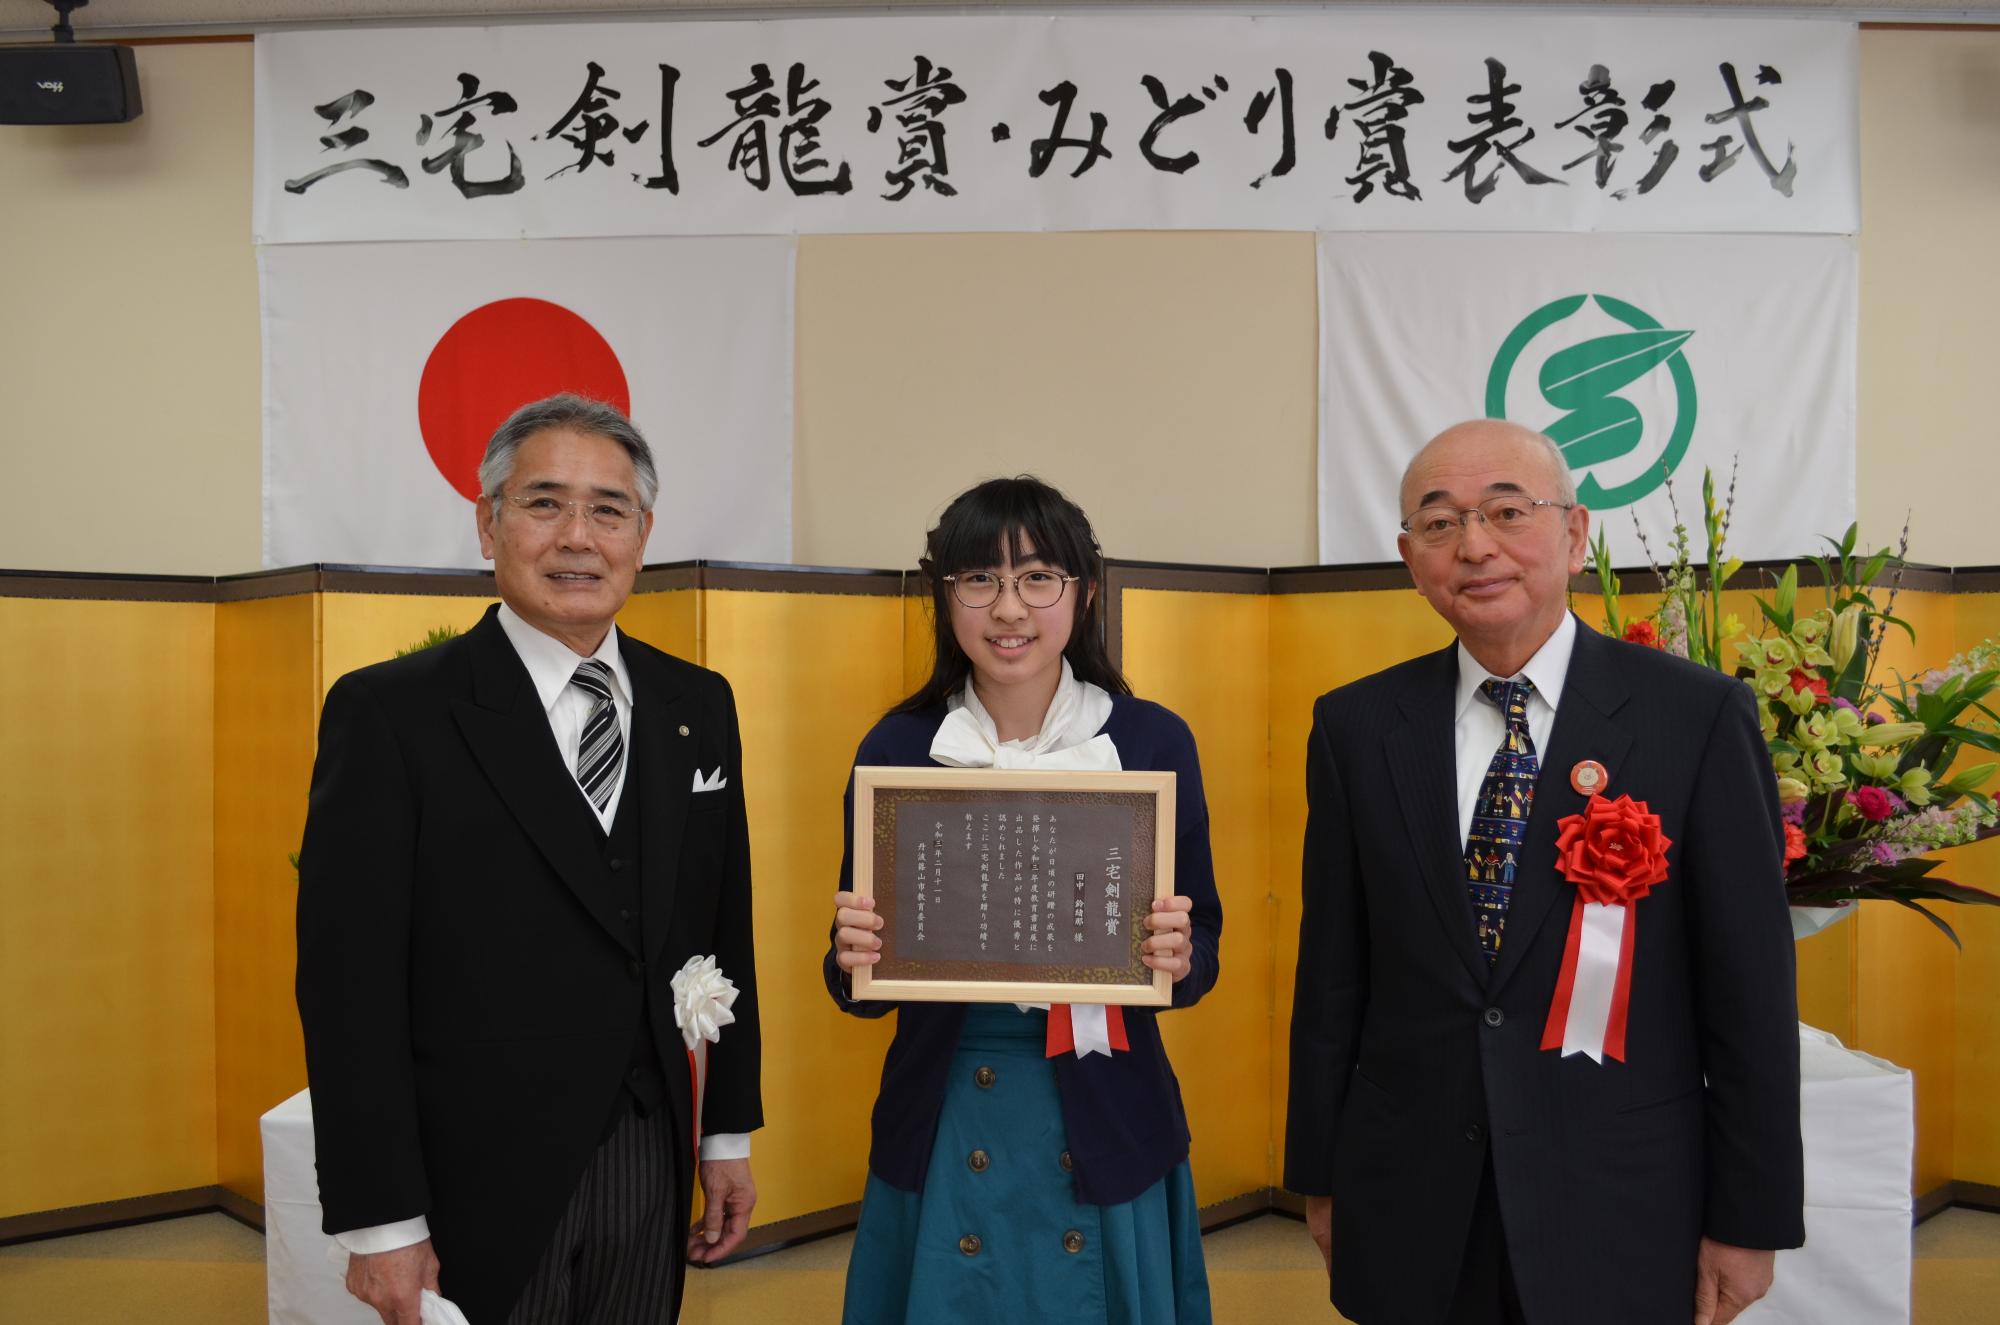 教育長と市長、表彰盾を手に持つ田中さん。